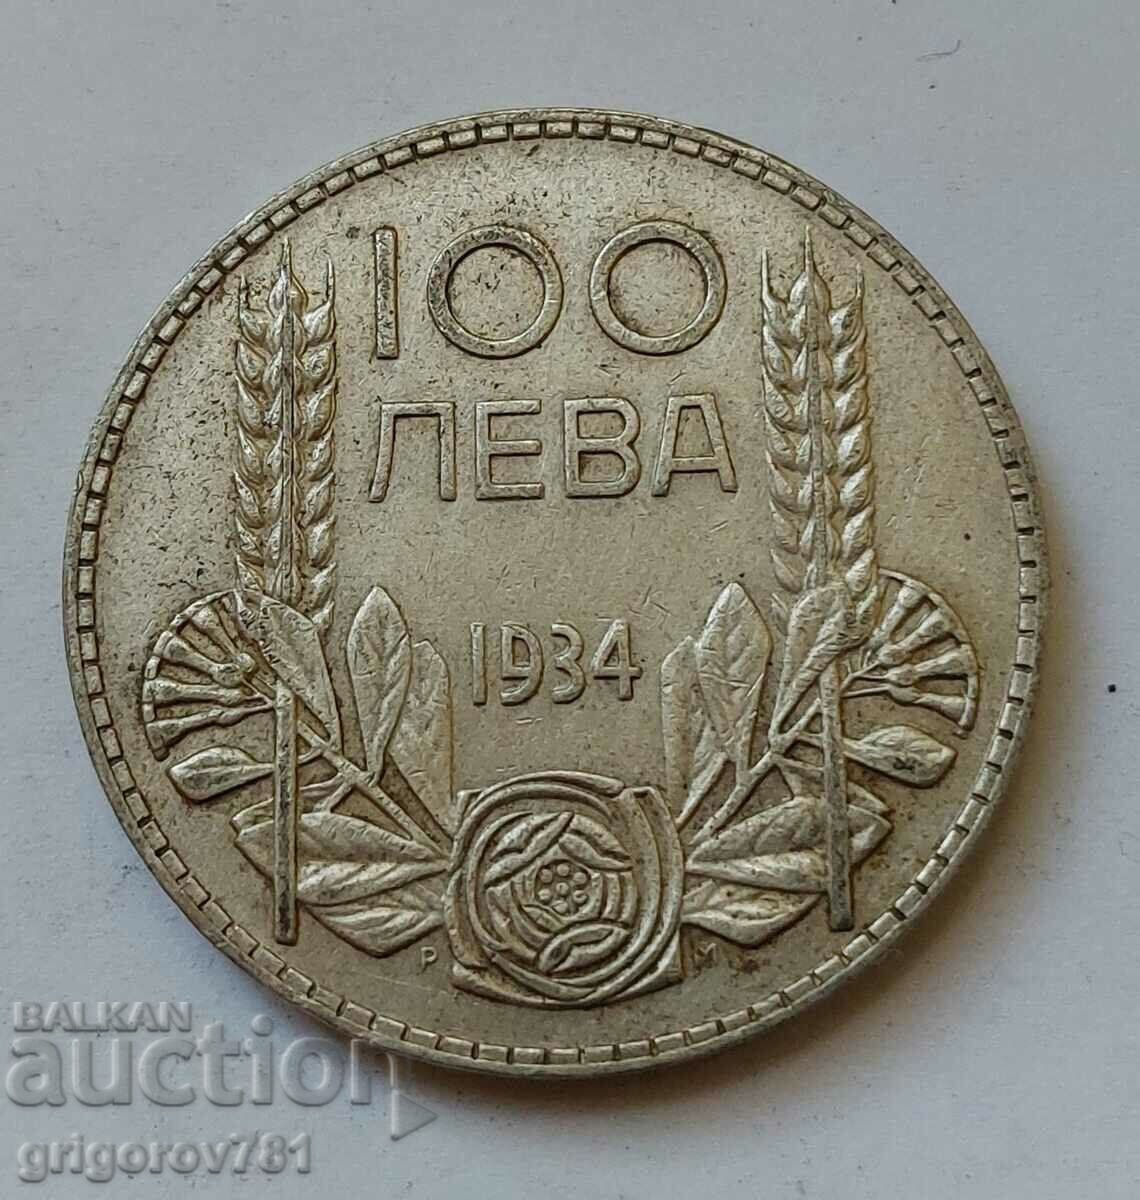 Ασήμι 100 λέβα Βουλγαρία 1934 - ασημένιο νόμισμα #119